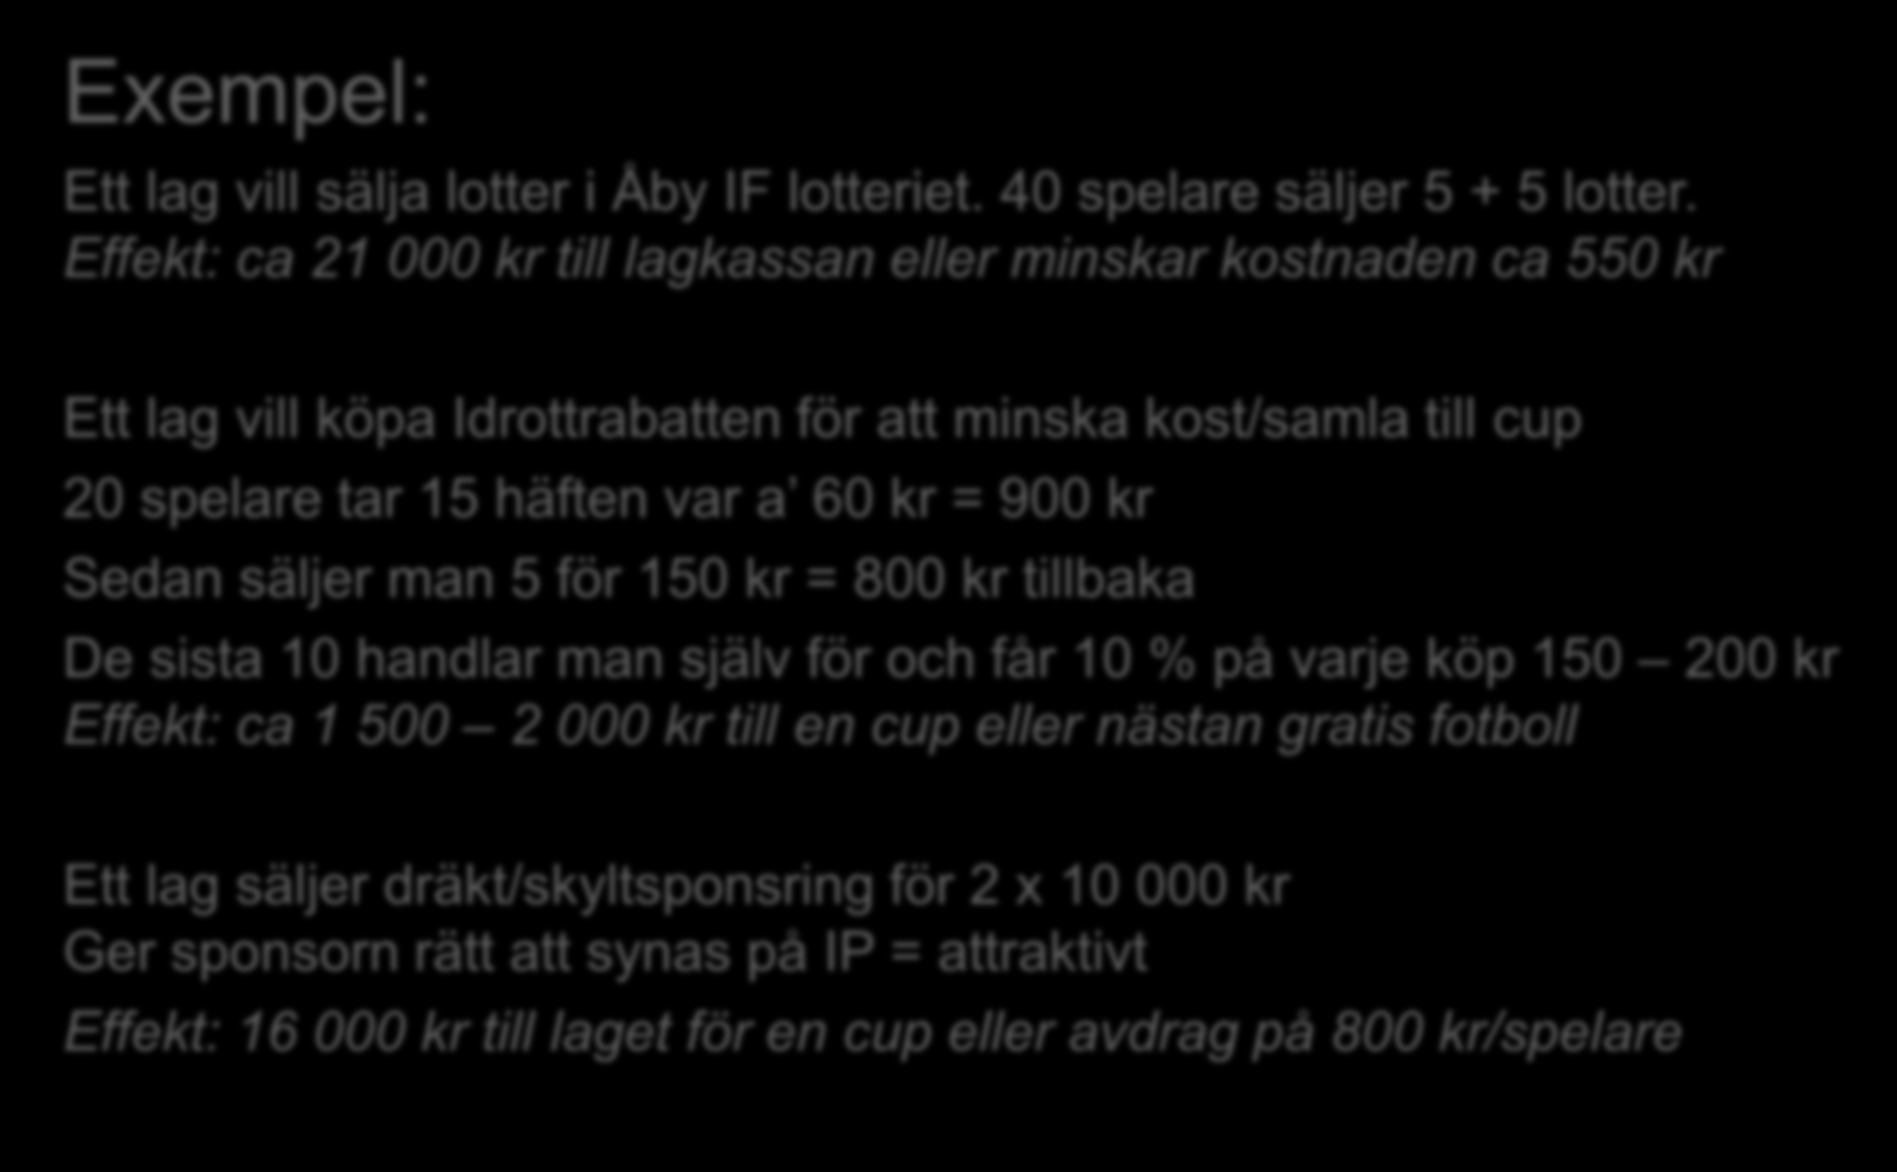 Exempel: Ett lag vill sälja lotter i Åby IF lotteriet. 40 spelare säljer 5 + 5 lotter.